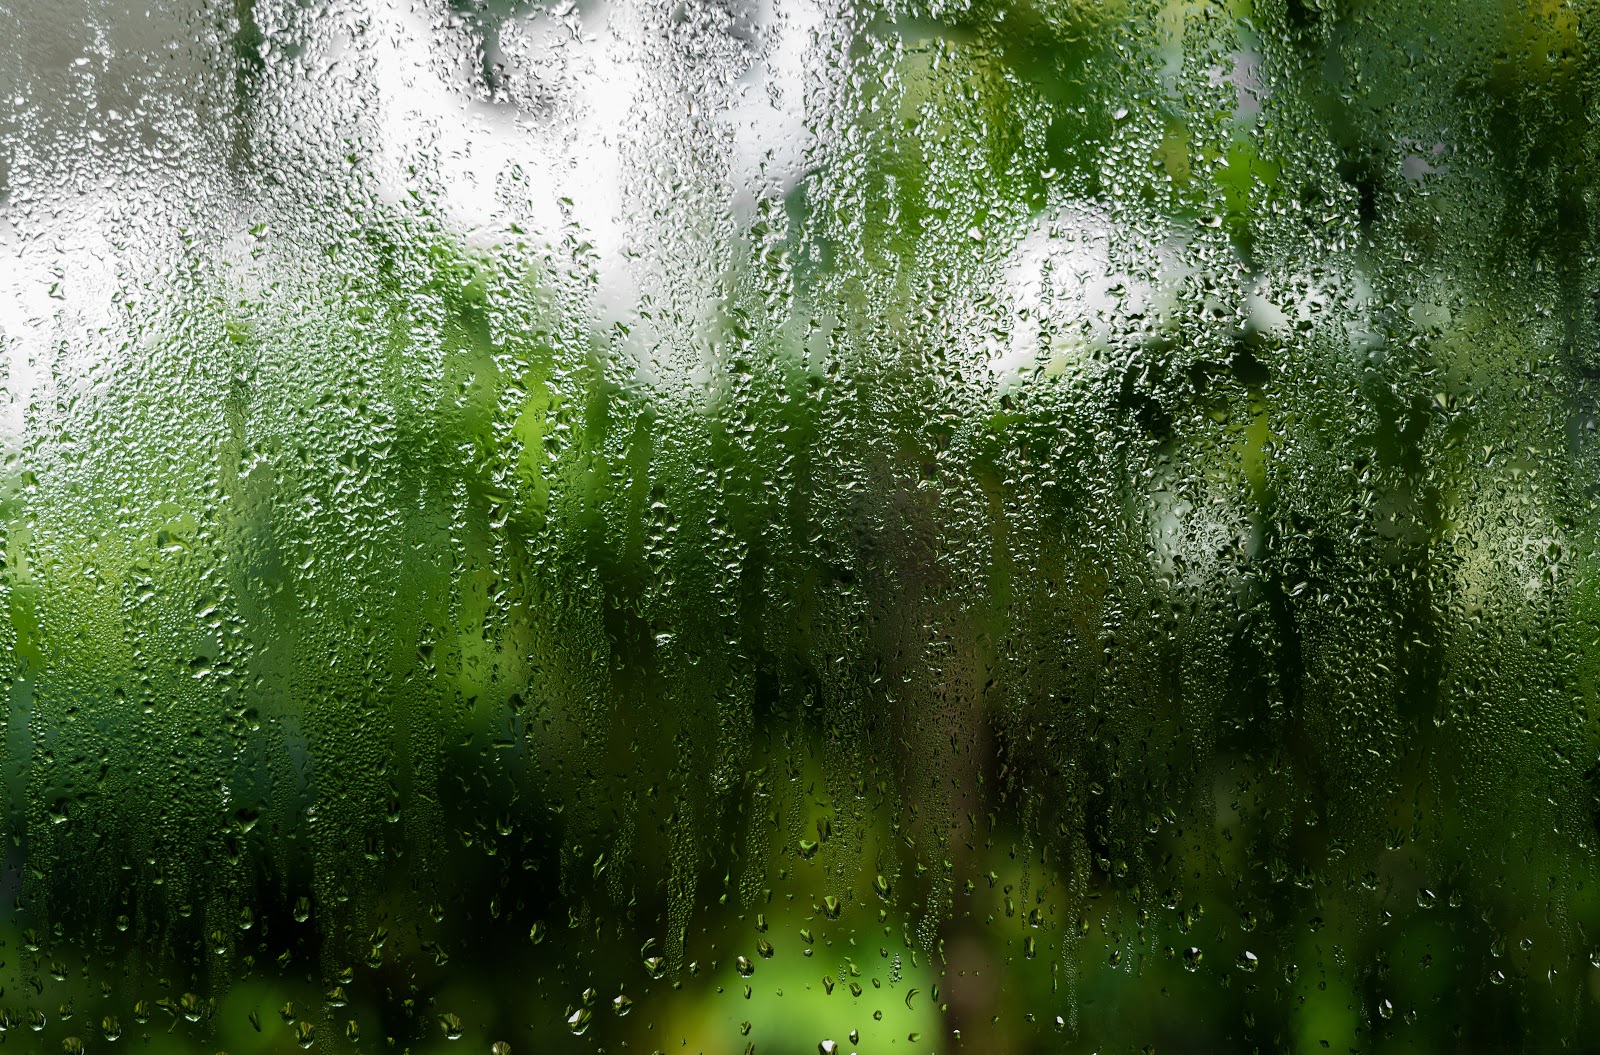 Prevent condensation between window panes